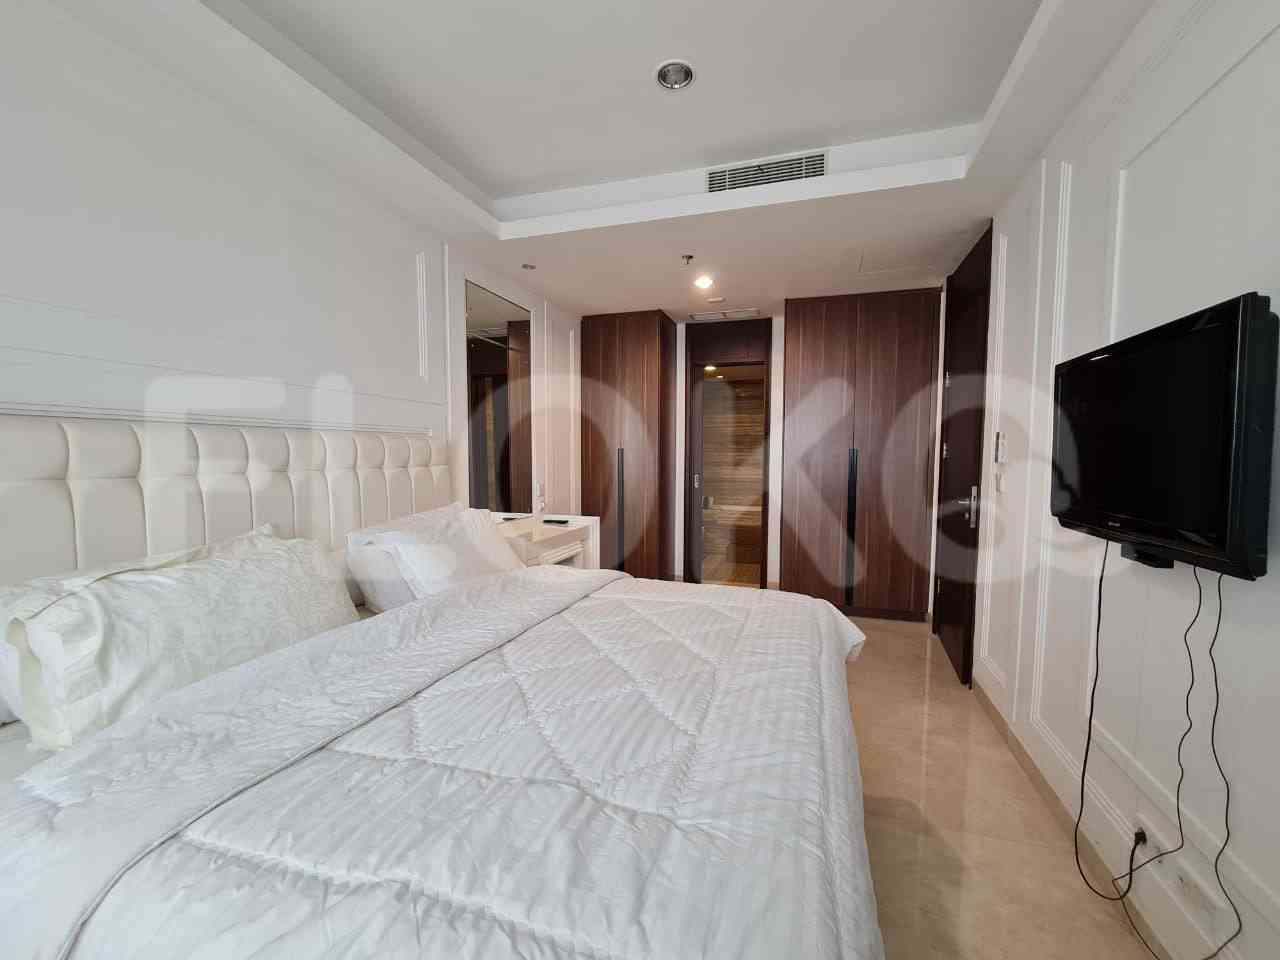 Tipe 1 Kamar Tidur di Lantai 10 untuk disewakan di Pondok Indah Residence - fpocda 6